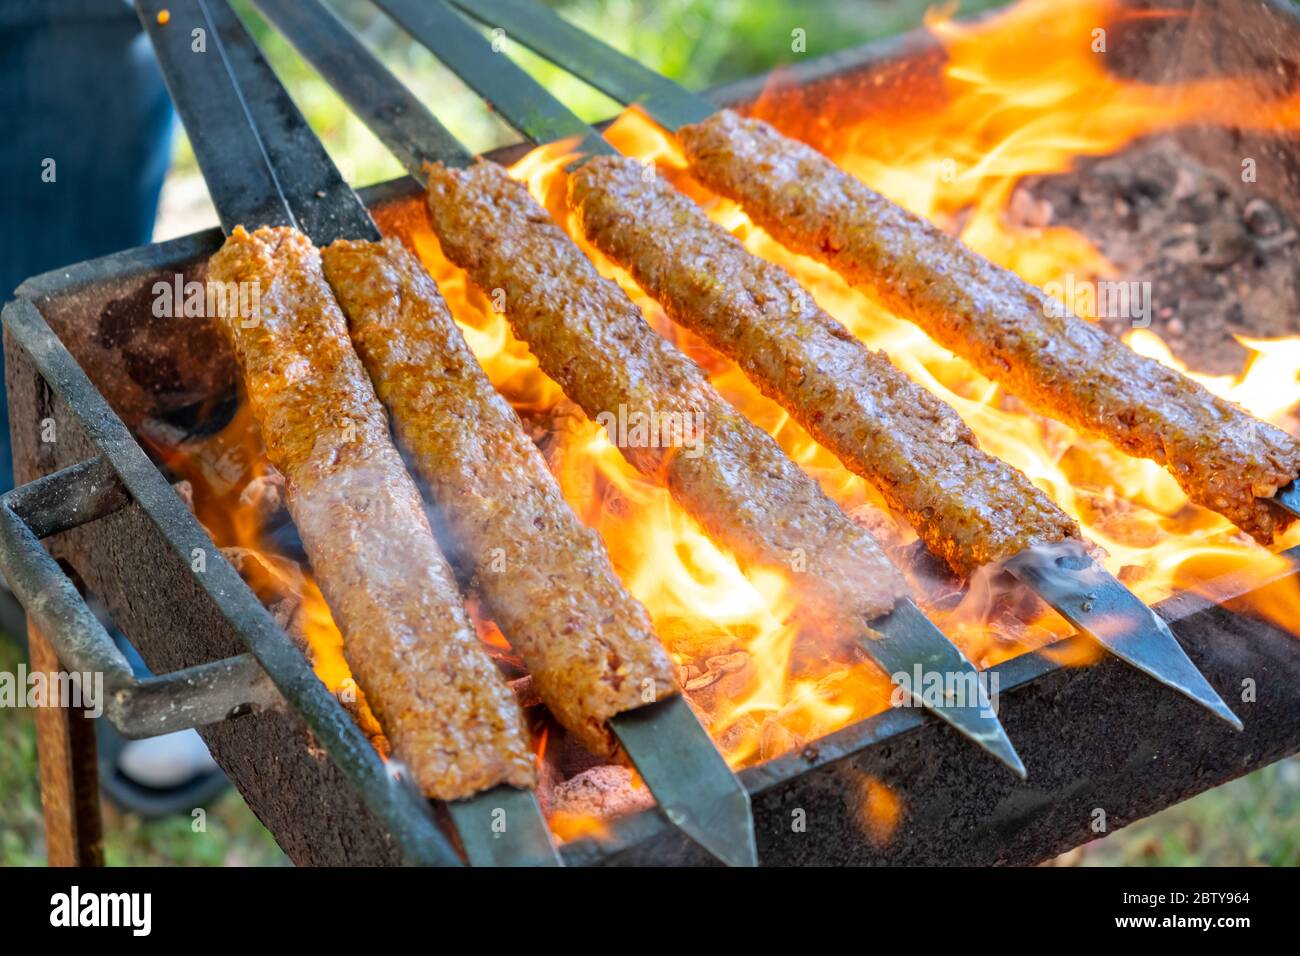 Turkish grill -Fotos und -Bildmaterial in hoher Auflösung - Seite 2 - Alamy